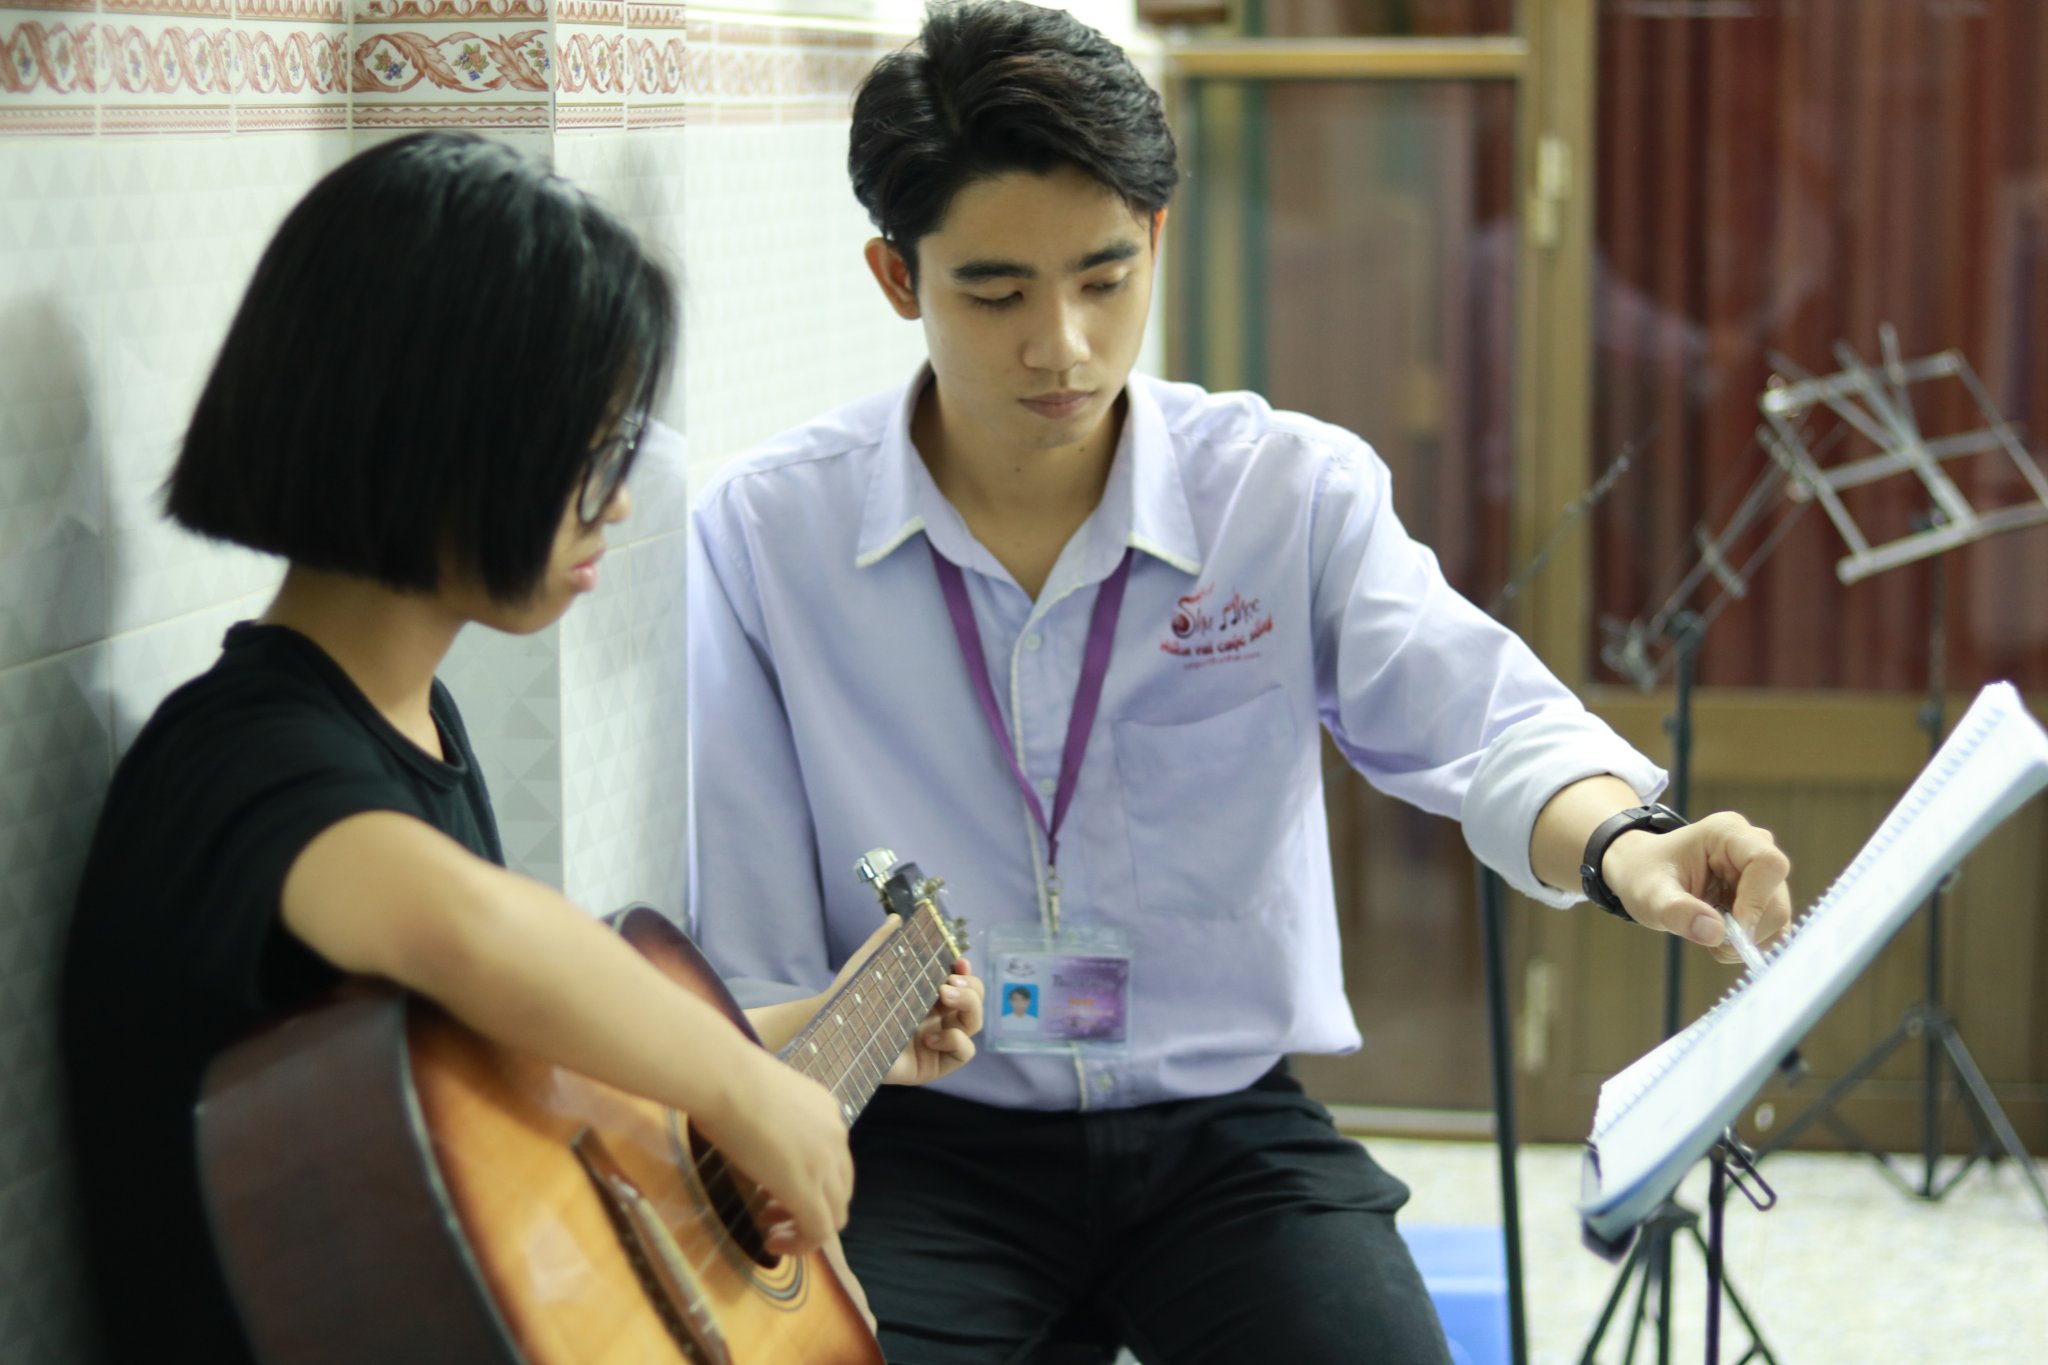 Lớp học đánh đàn guitar cơ bản tại quận Tân Phú TPHCM uy tín nhất